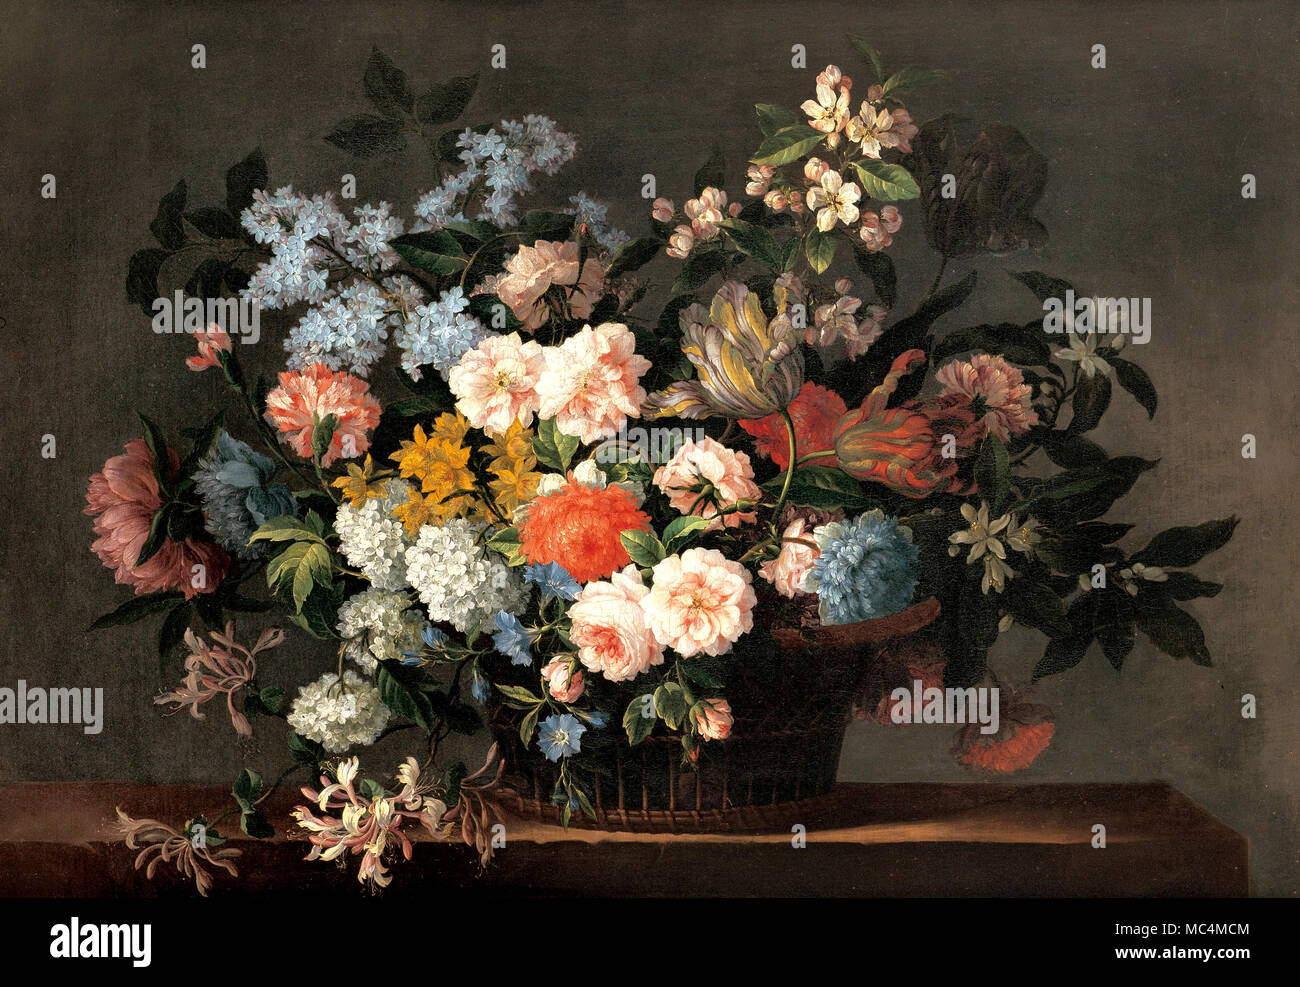 Jean-Baptiste Monnoyer, Stillleben mit Korb mit Blumen. Um 1690. Öl auf Leinwand. Art Gallery von South Australia, North Terrace, Australien. Stockfoto